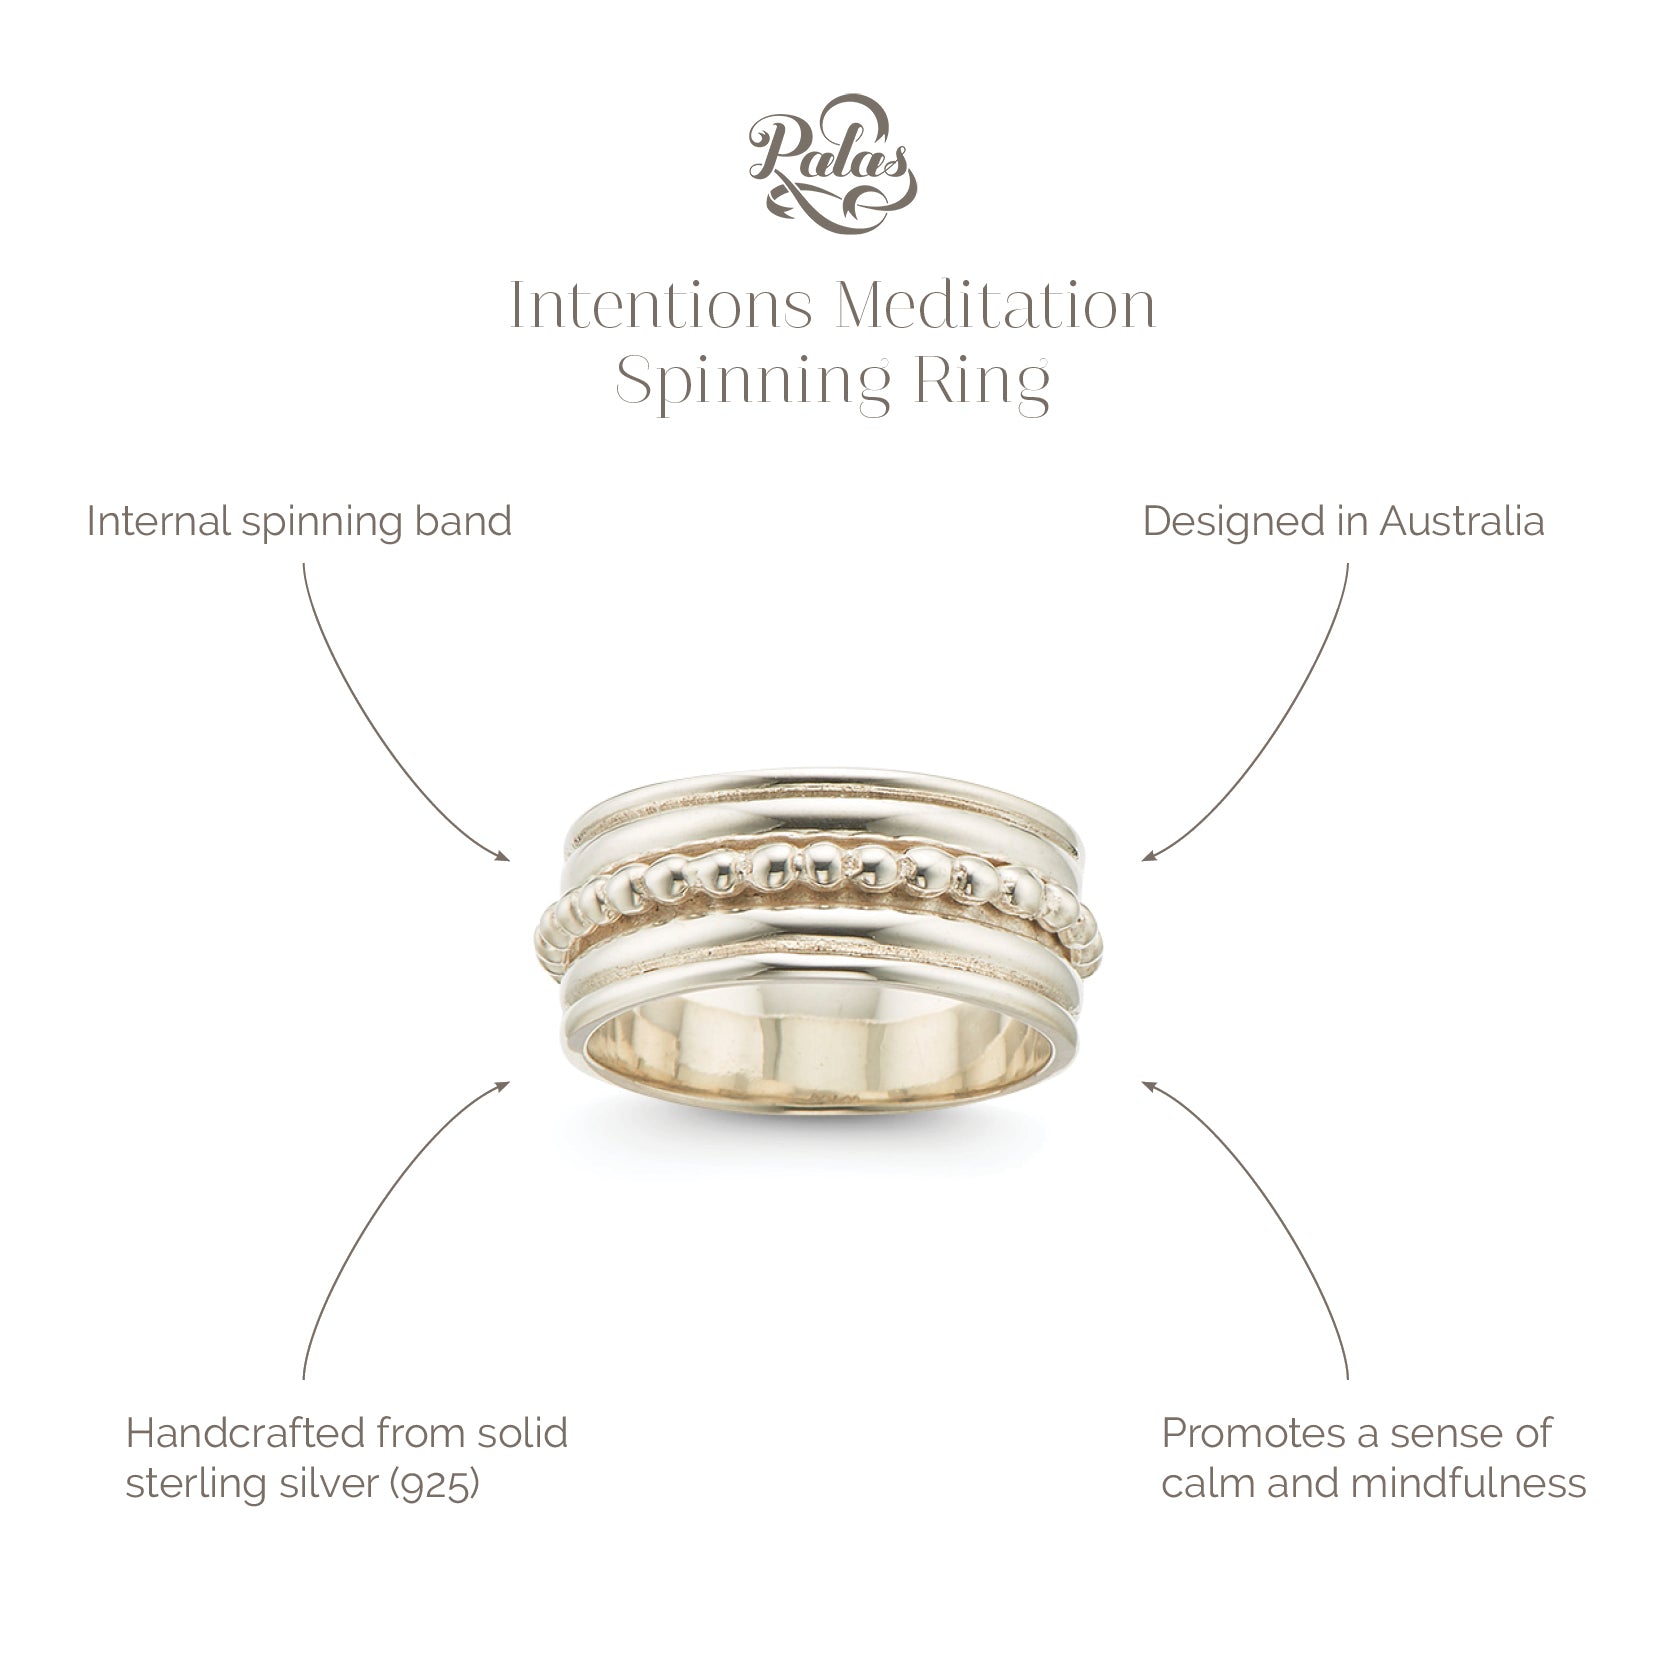 Intentions meditation spinning ring